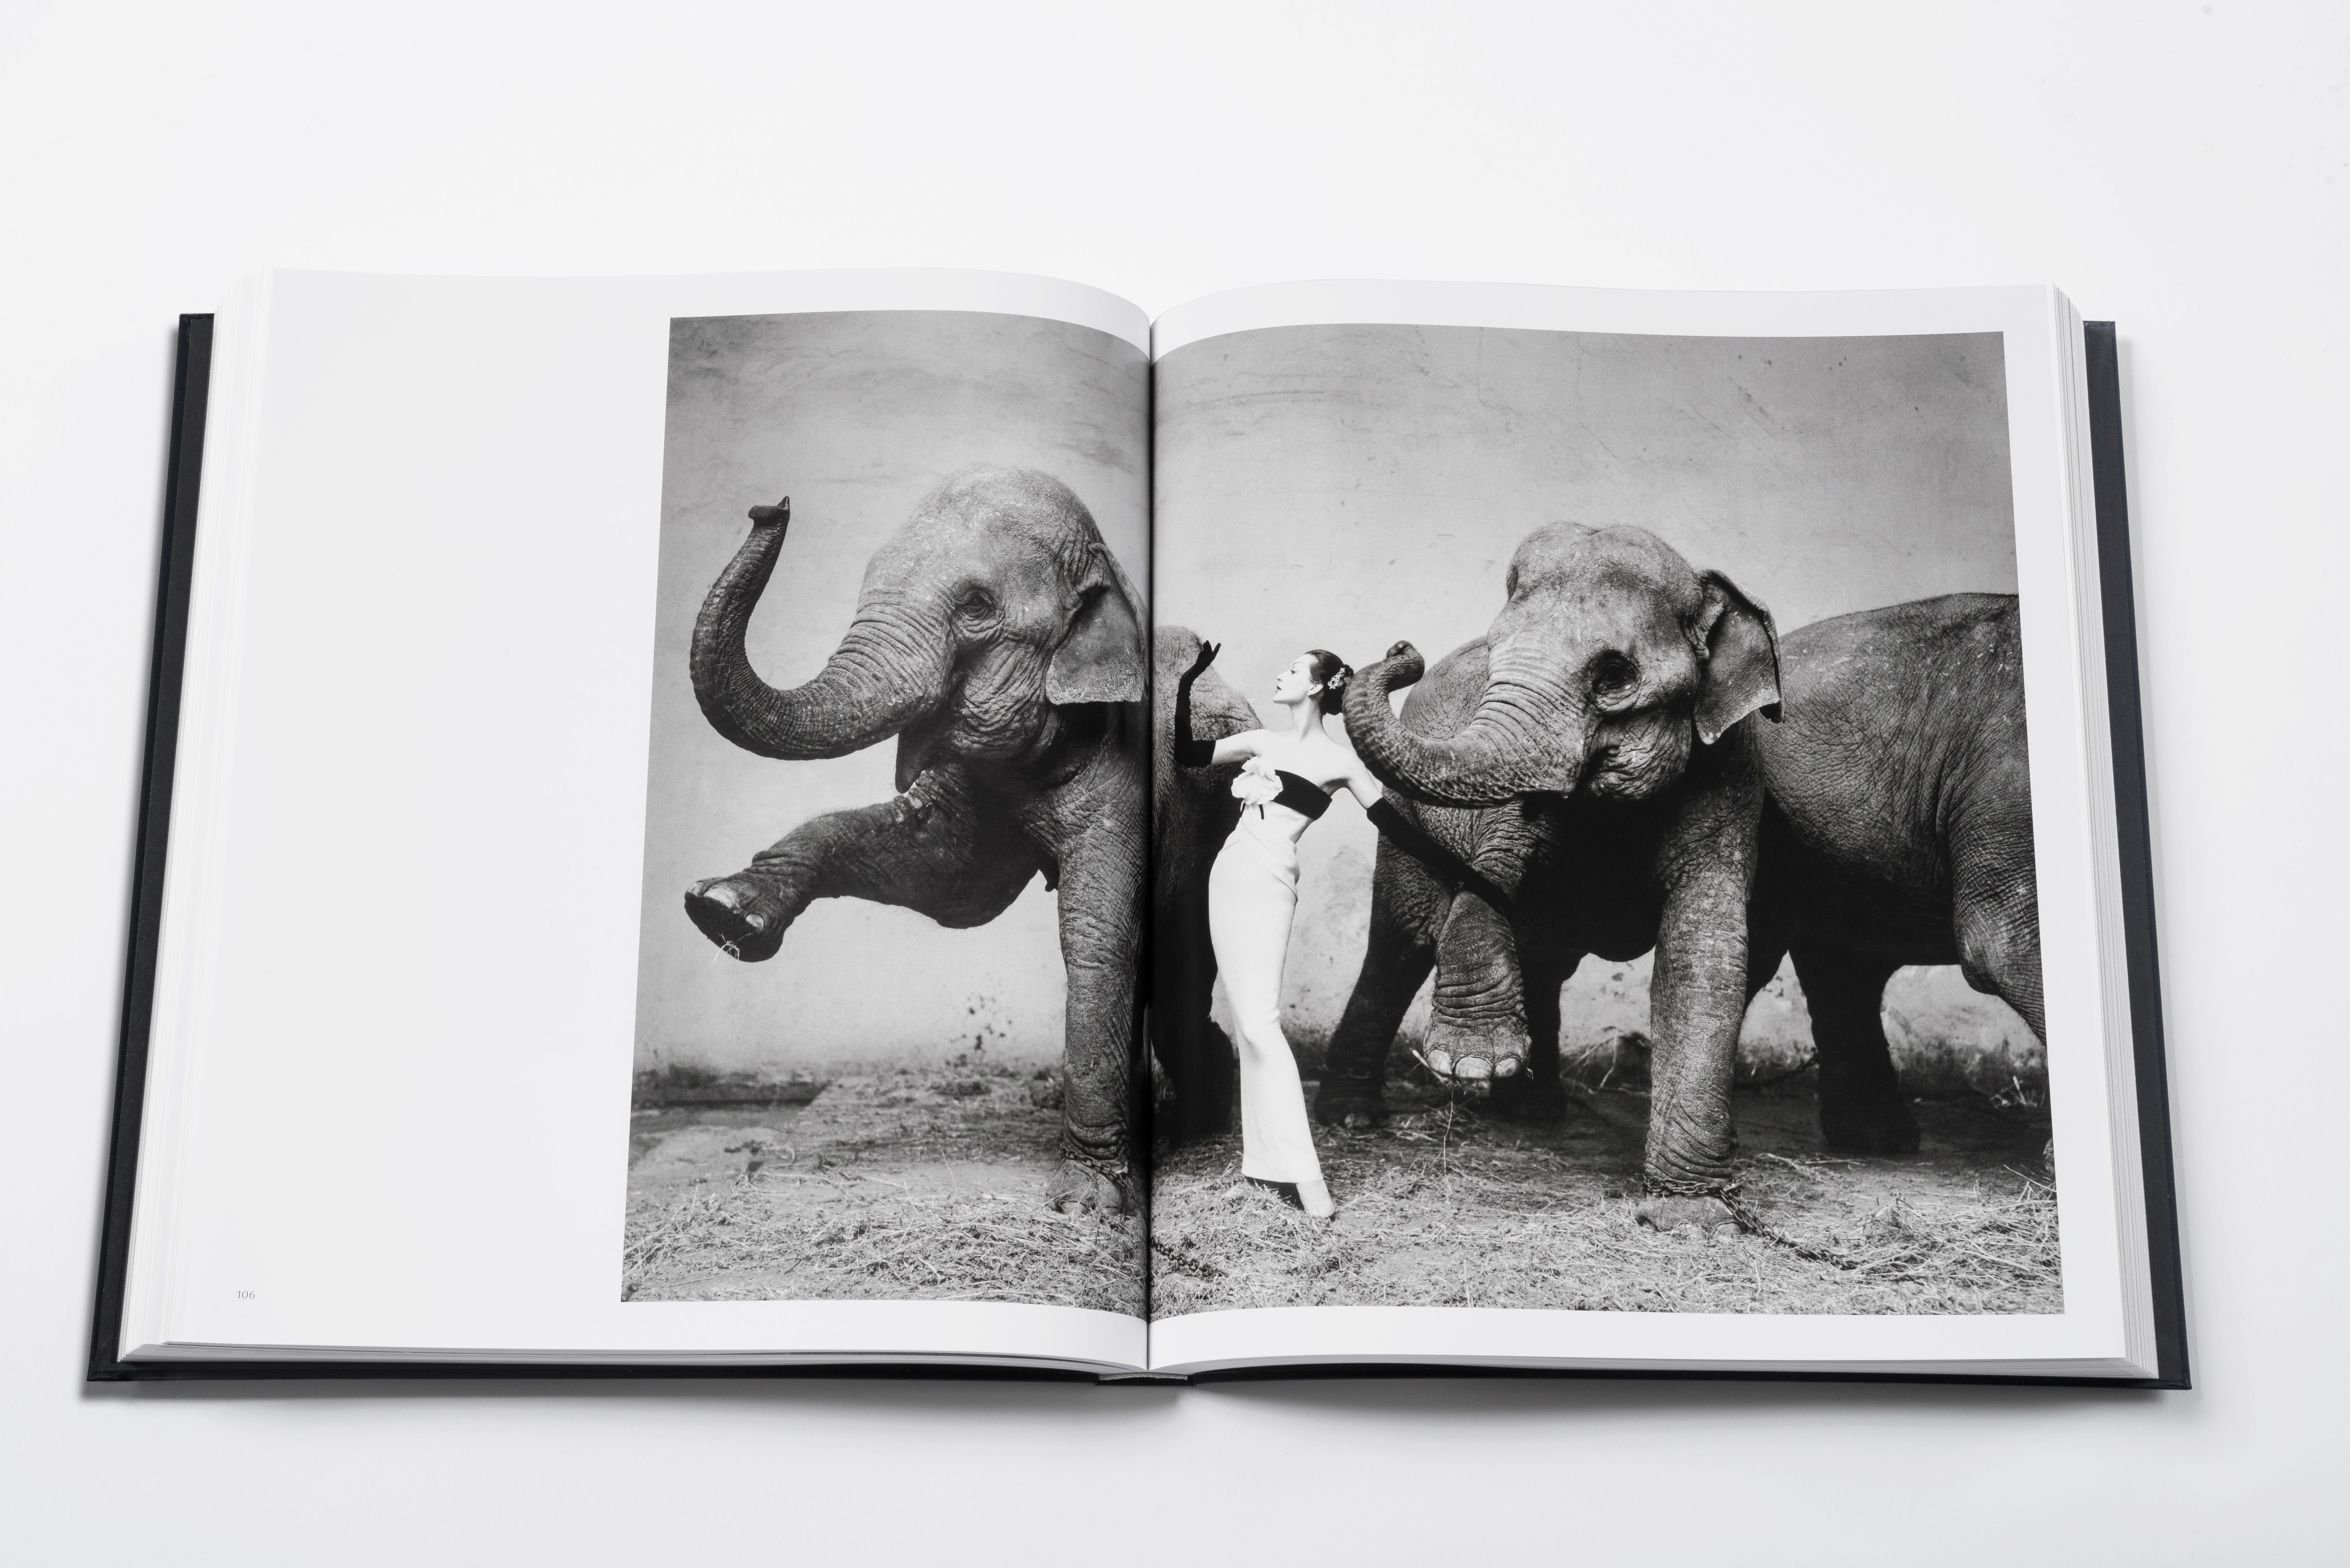 La modella Dovima fotografata con gli elefanti al Cinque d'Hives, 1955. Dal libro Dior by Avedon (Rizzoli)